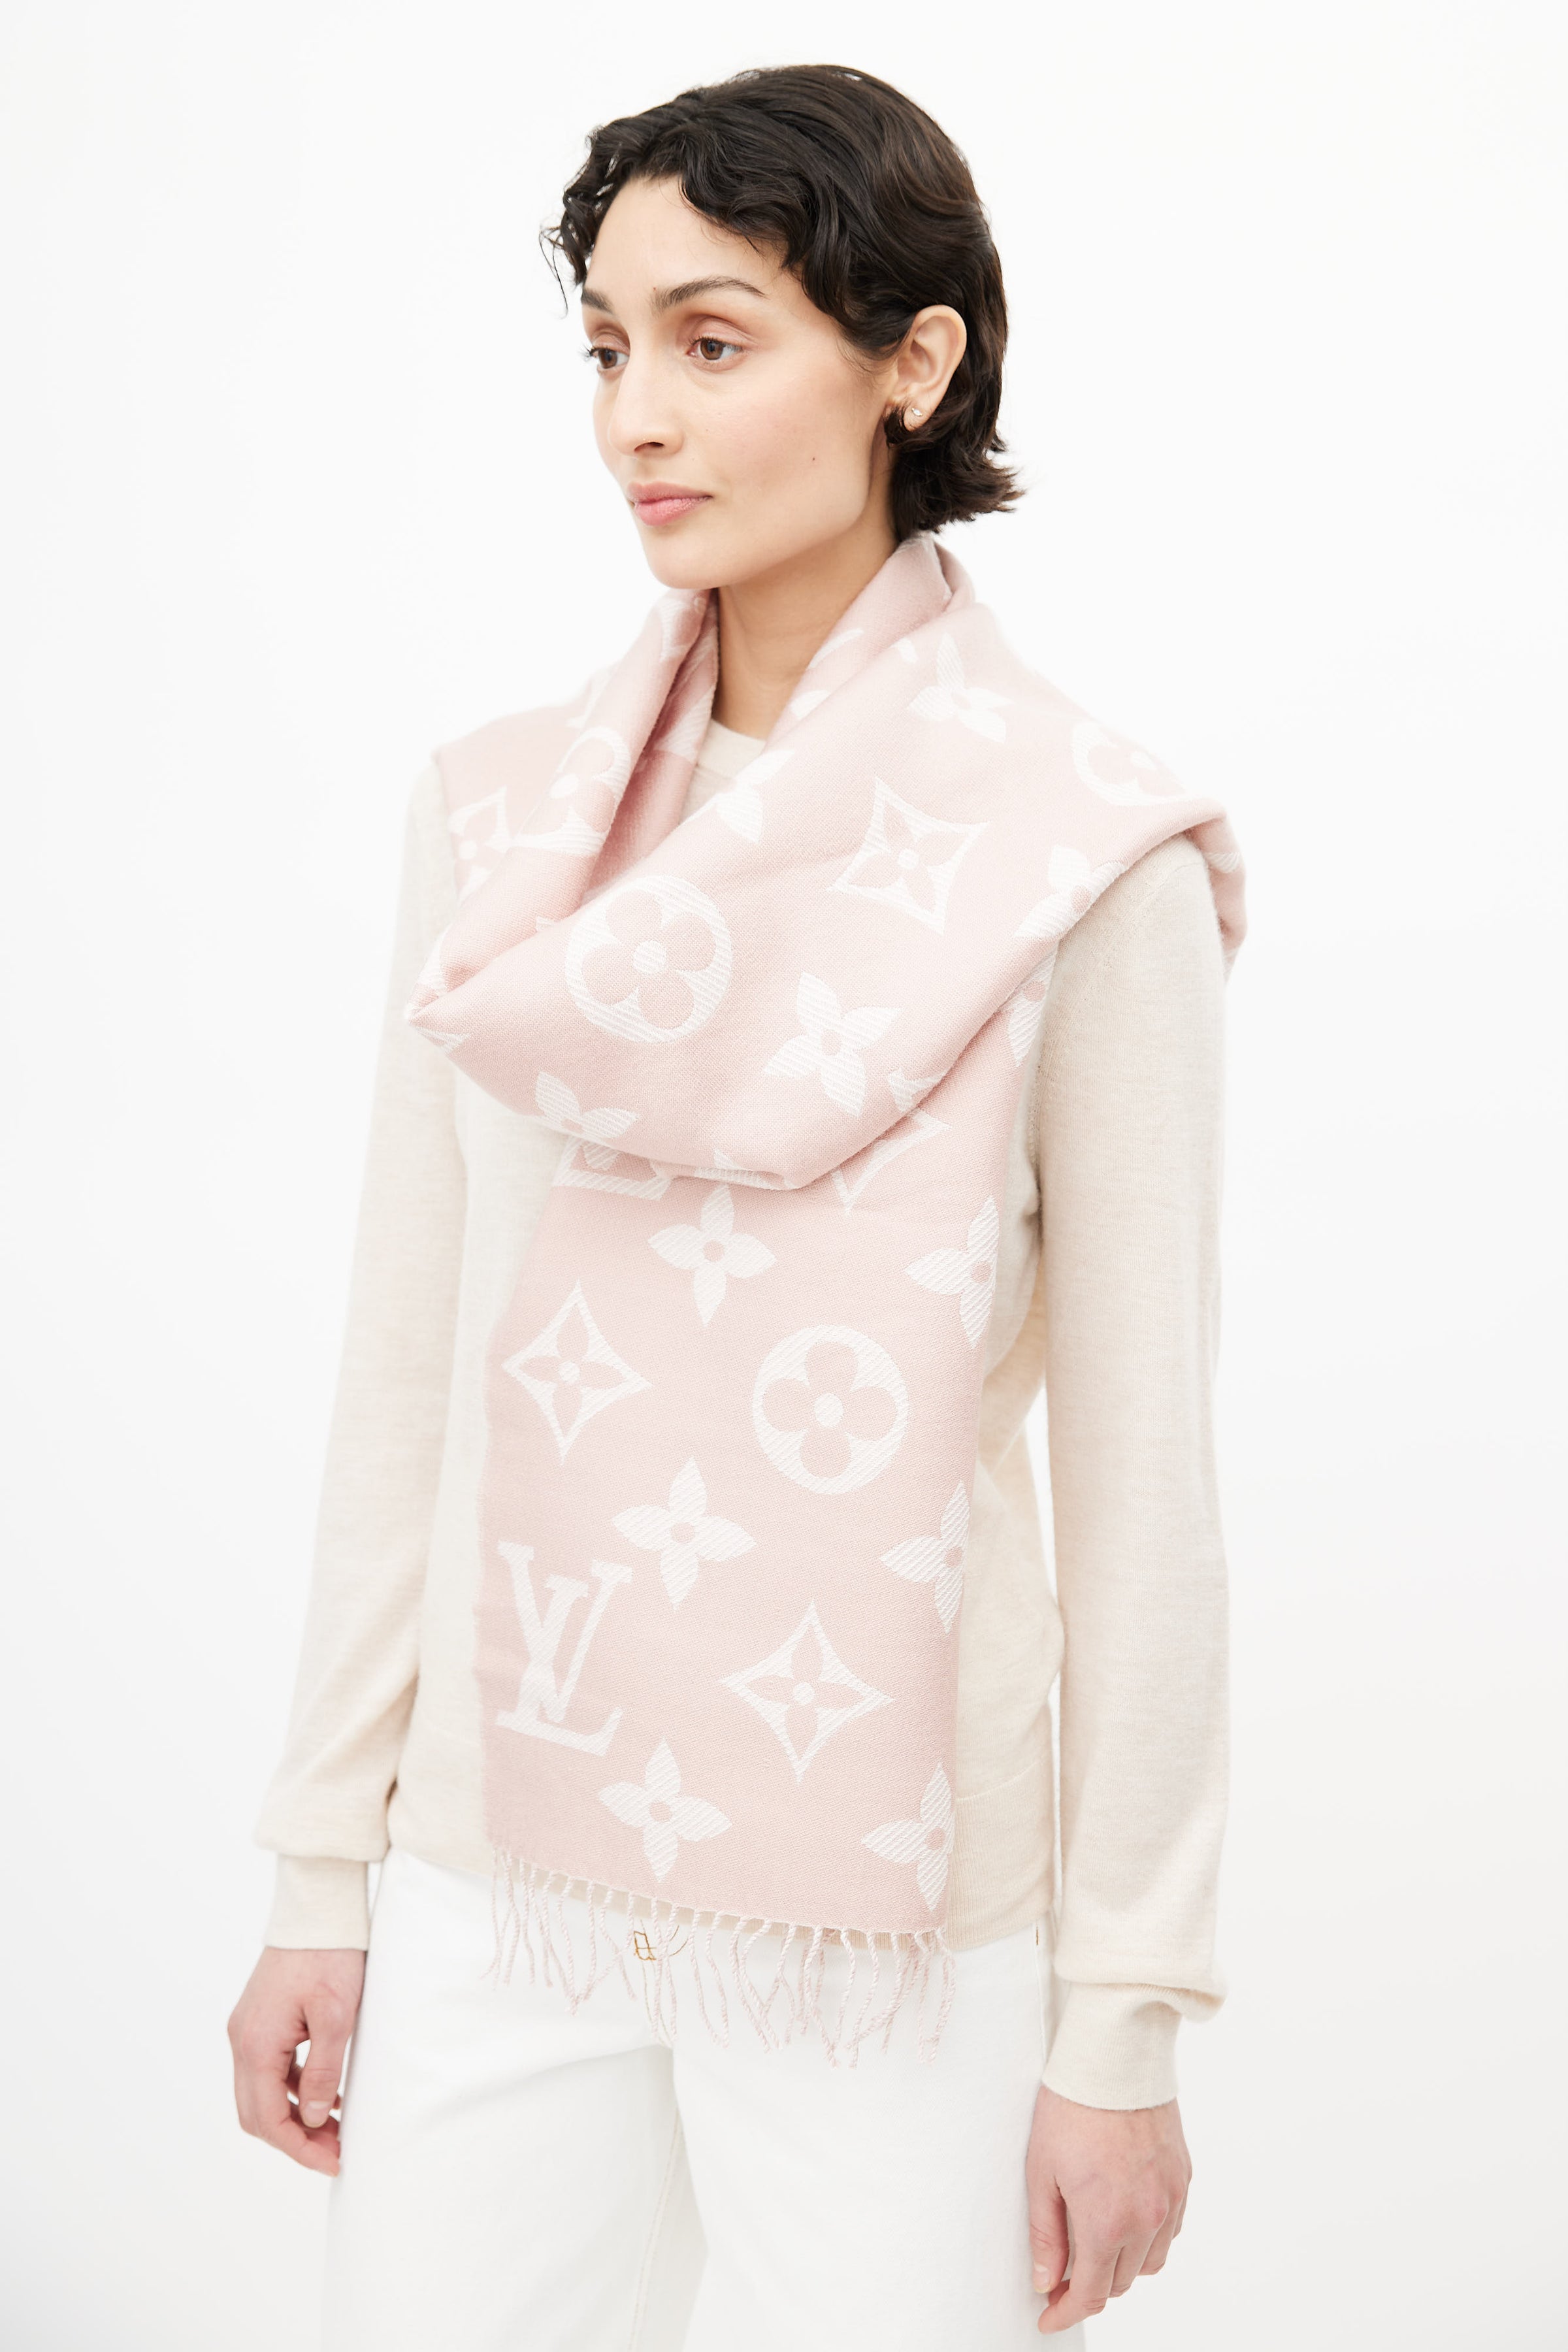 Shop Louis Vuitton Simply lv scarf (M76965, M76964, M76963, M76966) by  lufine